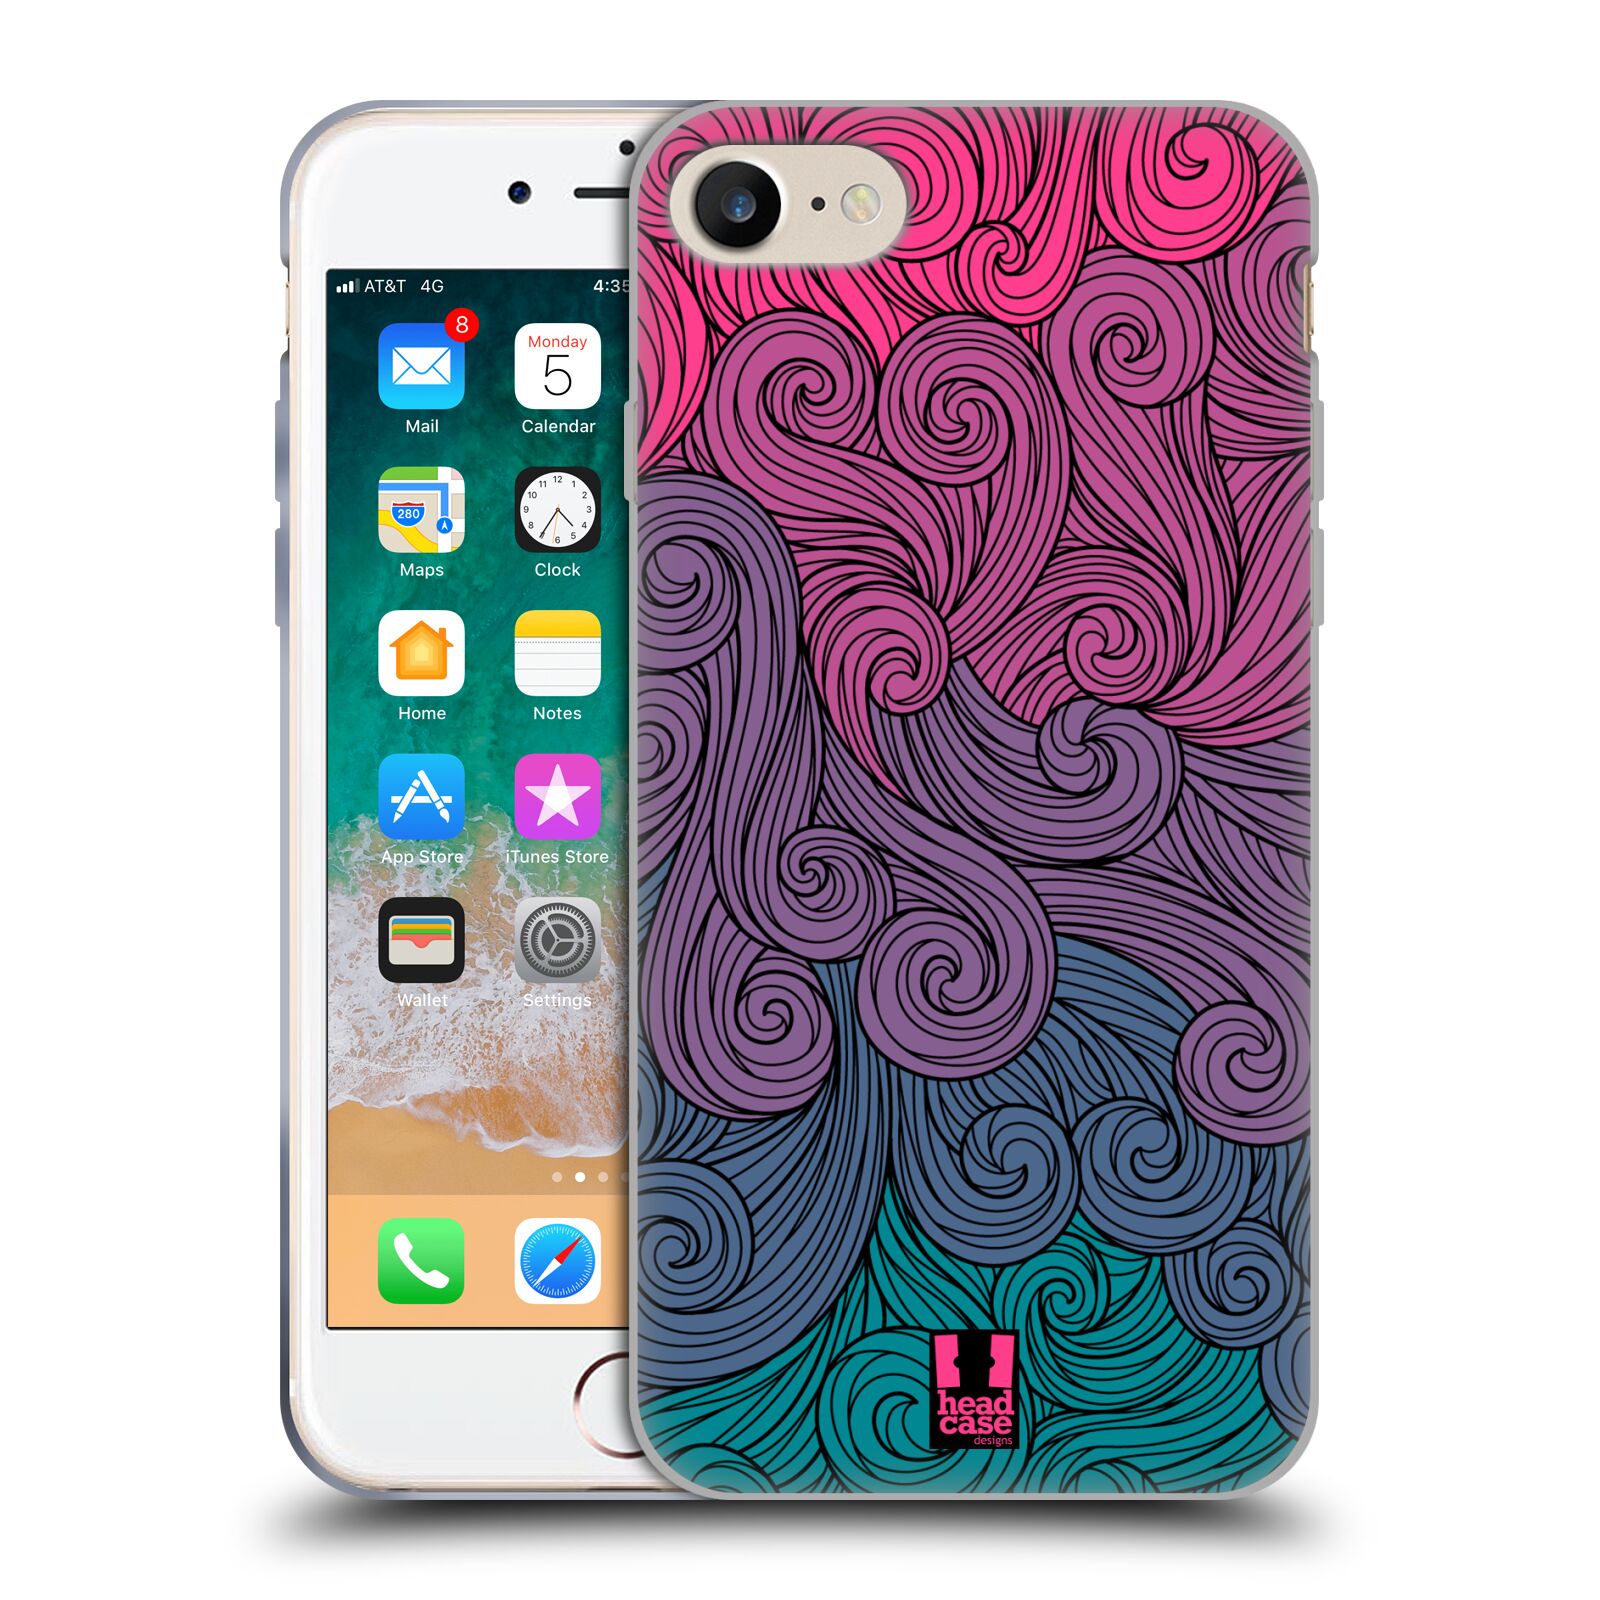 Silikonové pouzdro na mobil Apple iPhone 8 - Head Case - Swirls Hot Pink (Silikonový kryt či obal na mobilní telefon Apple iPhone 8 s motivem Swirls Hot Pink)